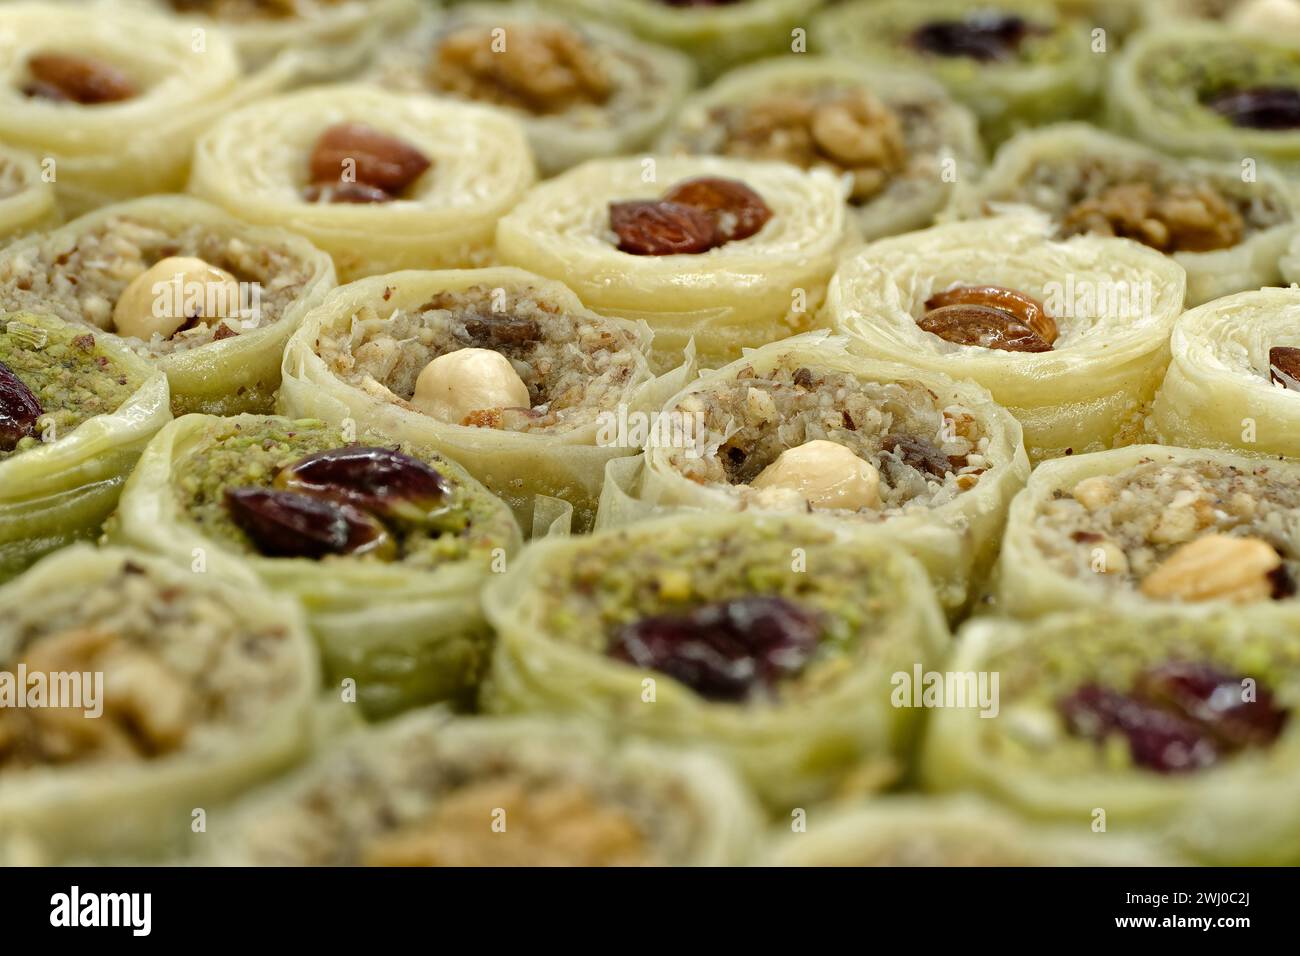 Dessert turc traditionnel assorti, baklava, avec diverses garnitures et garnitures, fond de nourriture abstraite Banque D'Images